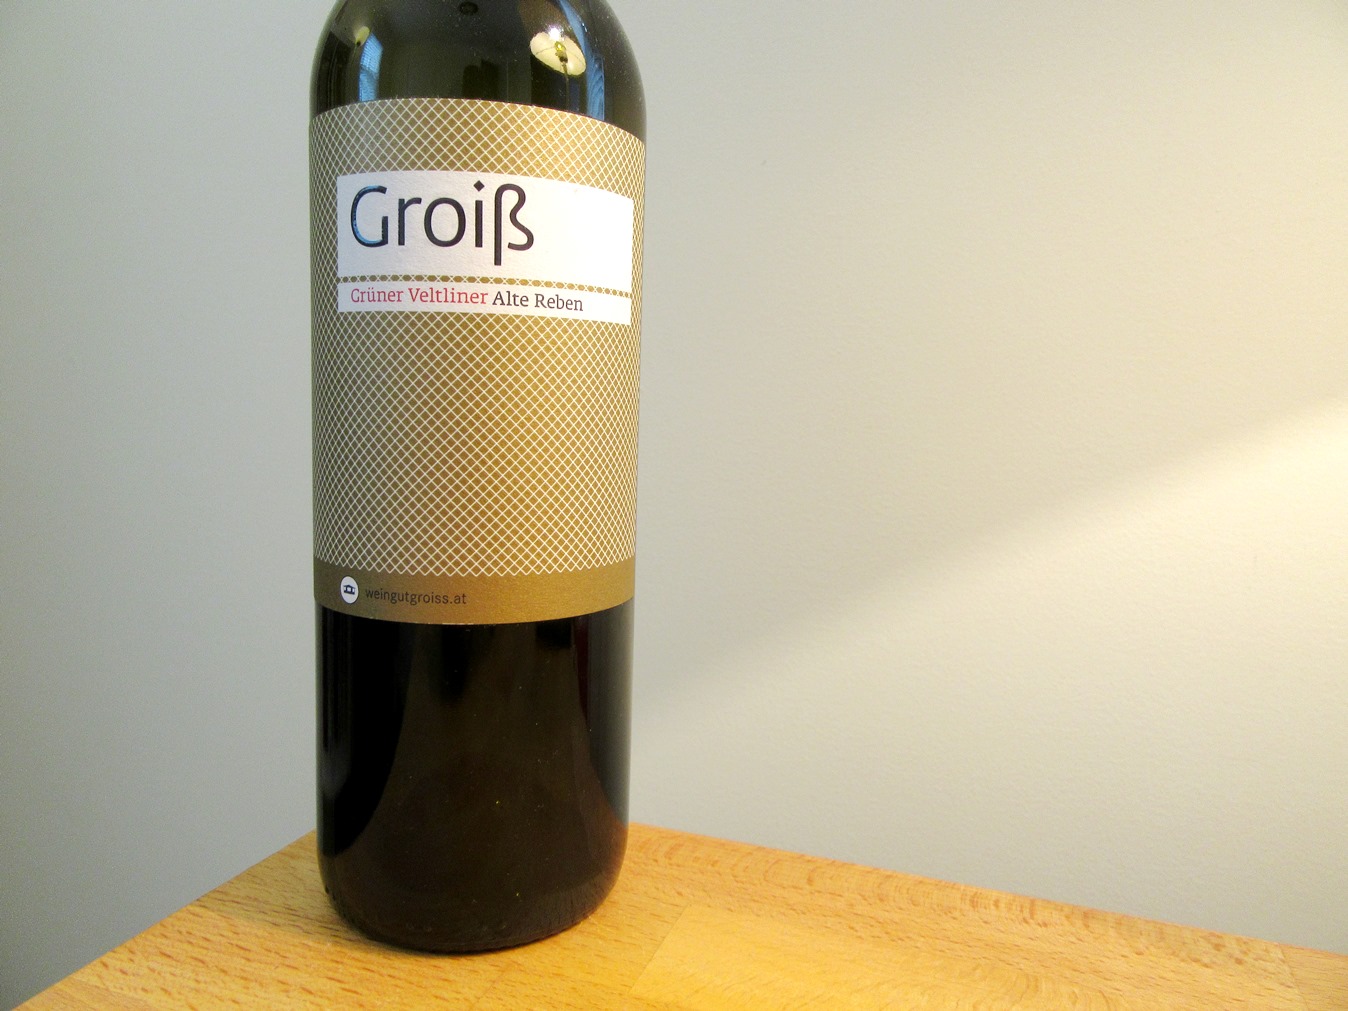 Weingut Groiss, Alte Reben Grüner Veltliner 2015, Wagram, Austria, Wine Casual